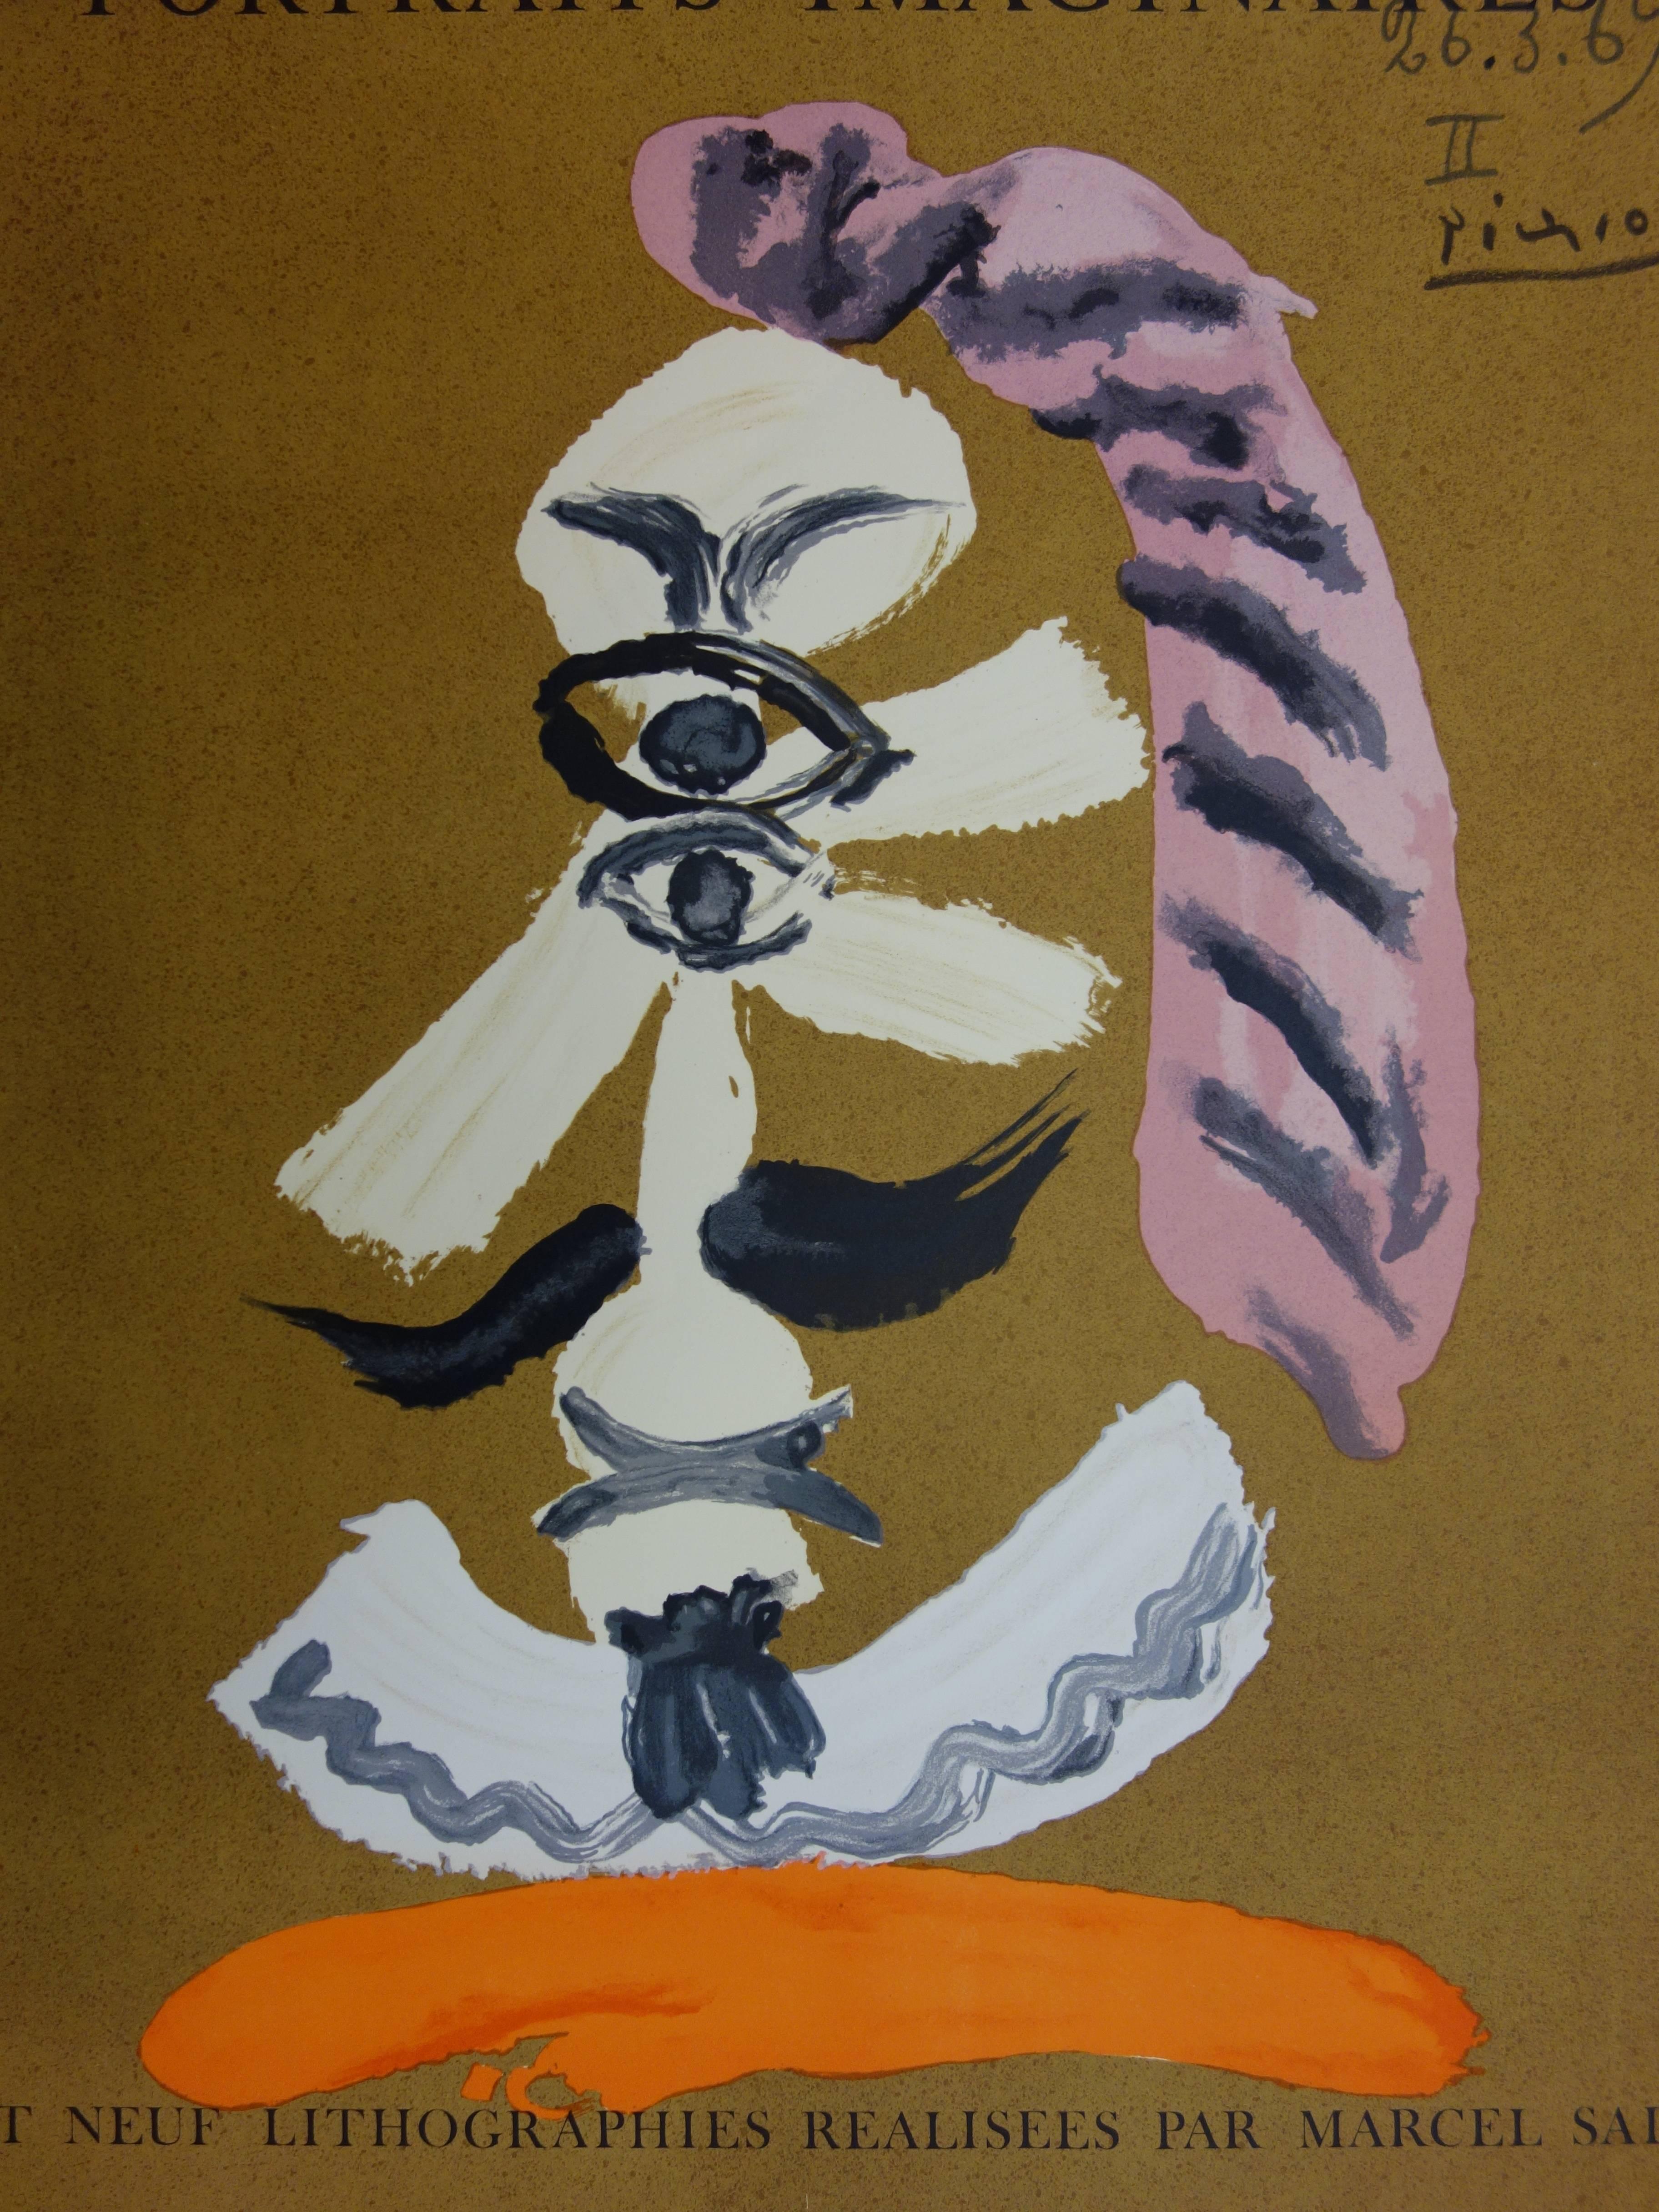 Imaginary Portraits : Cubist Portrait - Lithograph - 1971 - Brown Portrait Print by (after) Pablo Picasso